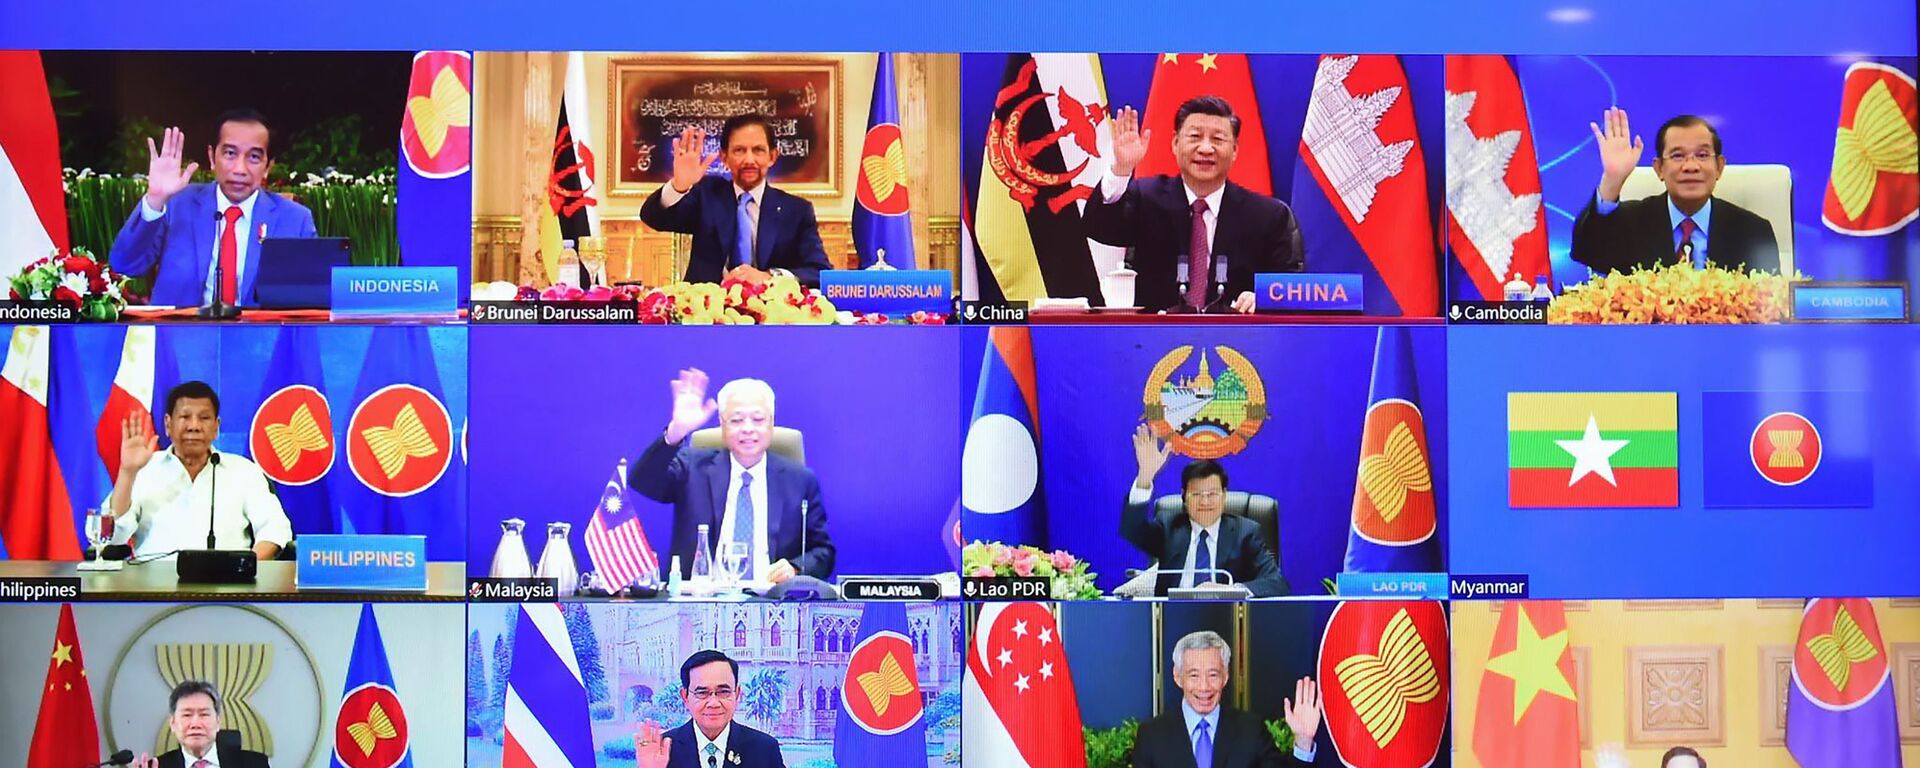 Lãnh đạo các nước ASEAN và Chủ tịch Trung Quốc Tập Cận Bình trên màn hình trong cuộc họp trực tuyến
Hội nghị cấp cao đặc biệt ASEAN-Trung Quốc - Sputnik Việt Nam, 1920, 03.06.2022